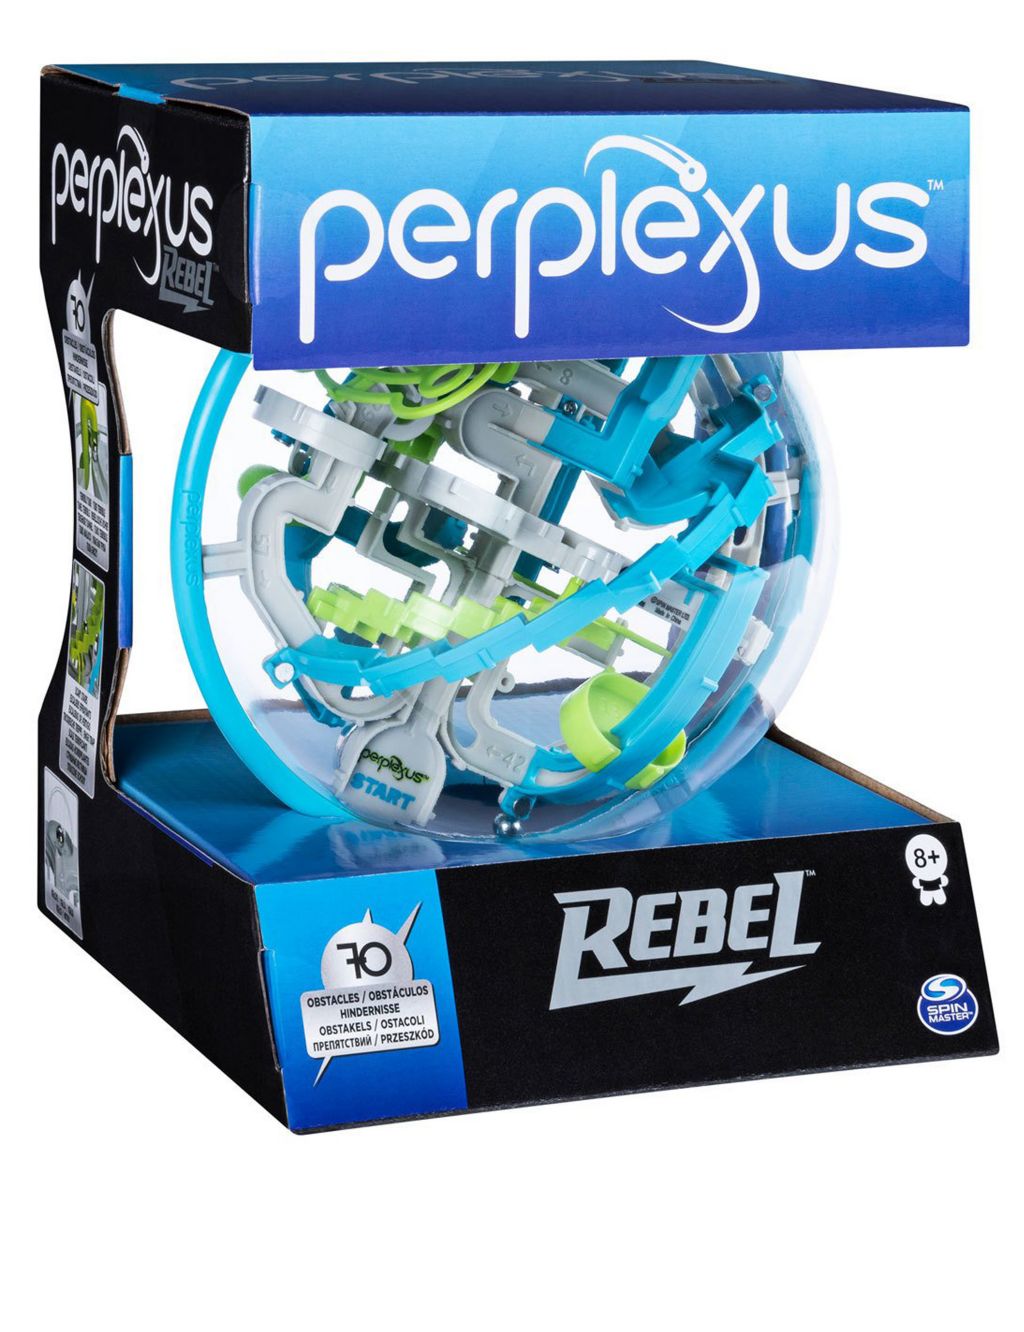 Perplexus Rebel (8+ Yrs) image 2